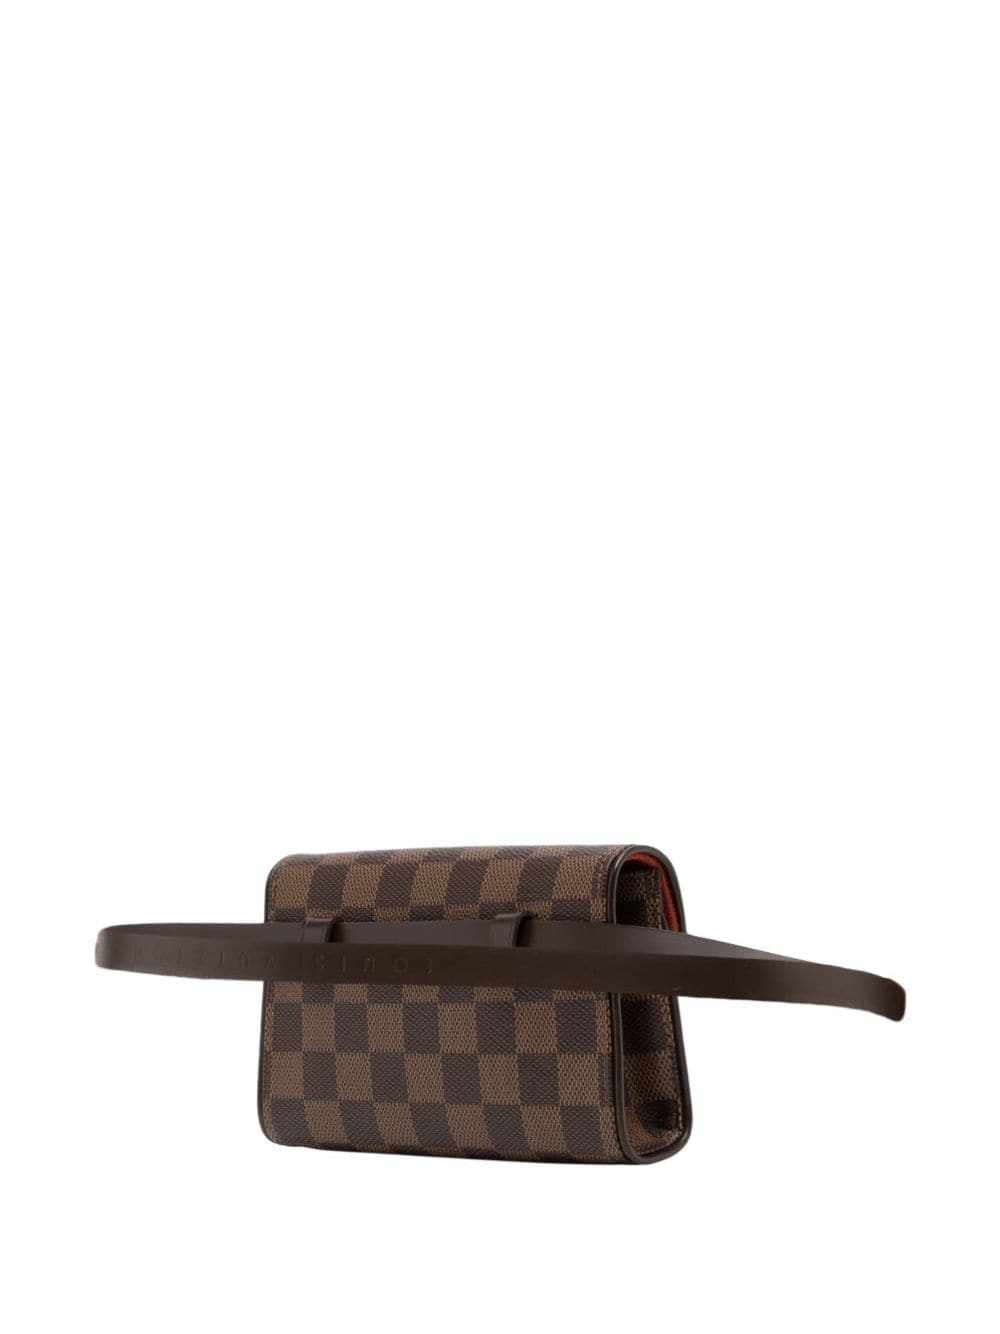 Louis Vuitton 2005 Monogram Florentine Belt Bag – Lux Second Chance